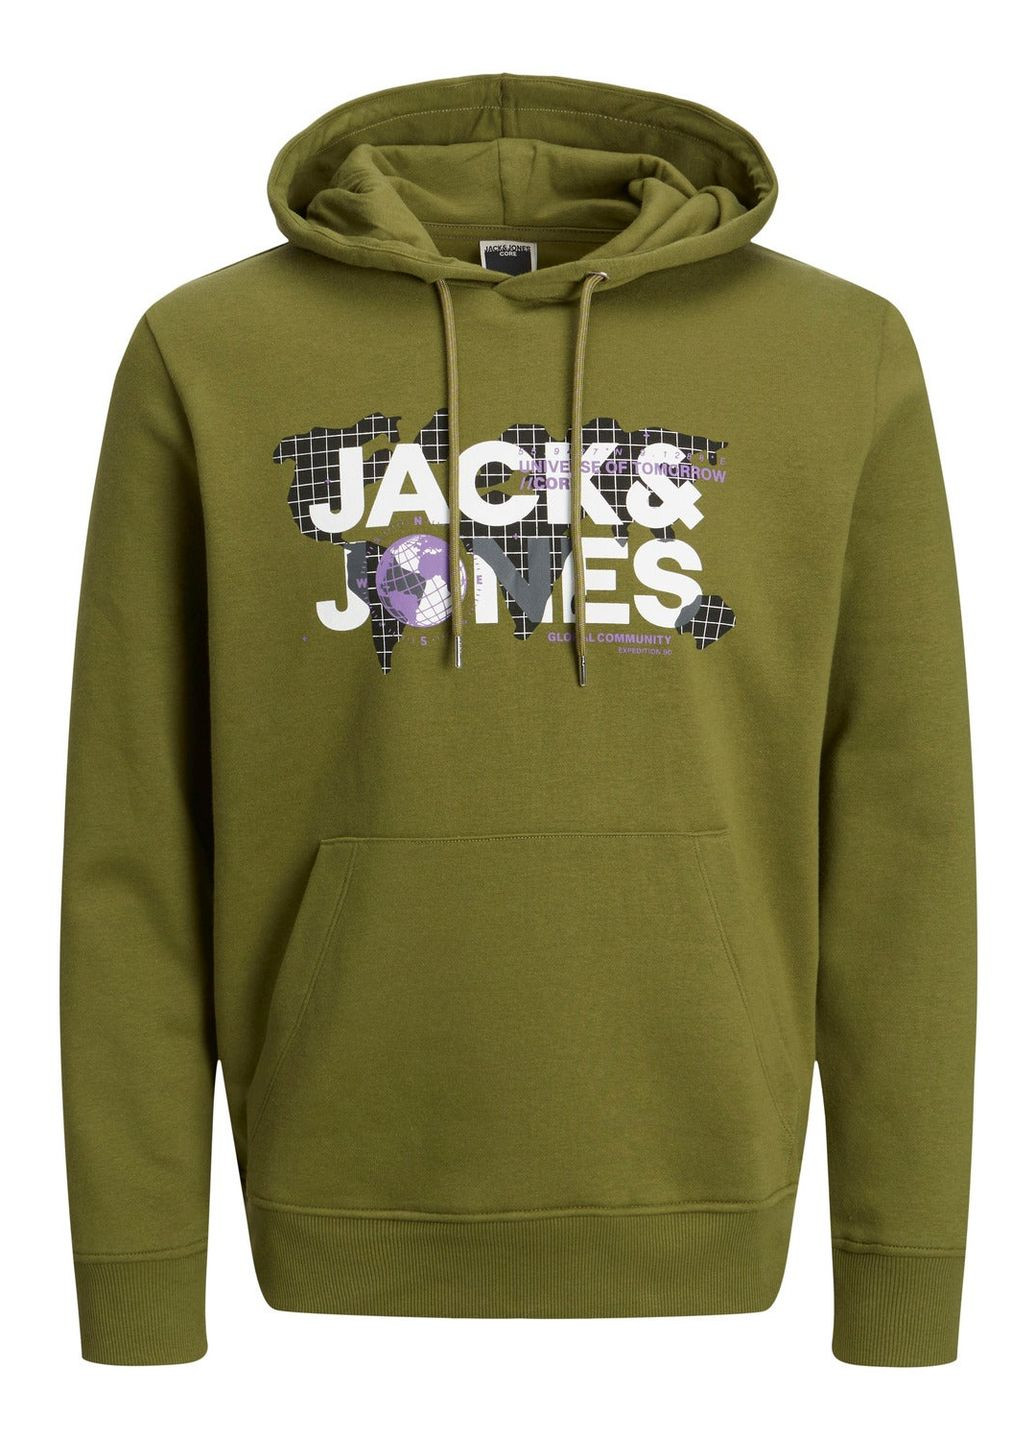 Худи флис,бледно-зеленый с принтом,JACK&JONES Jack & Jones (275124305)